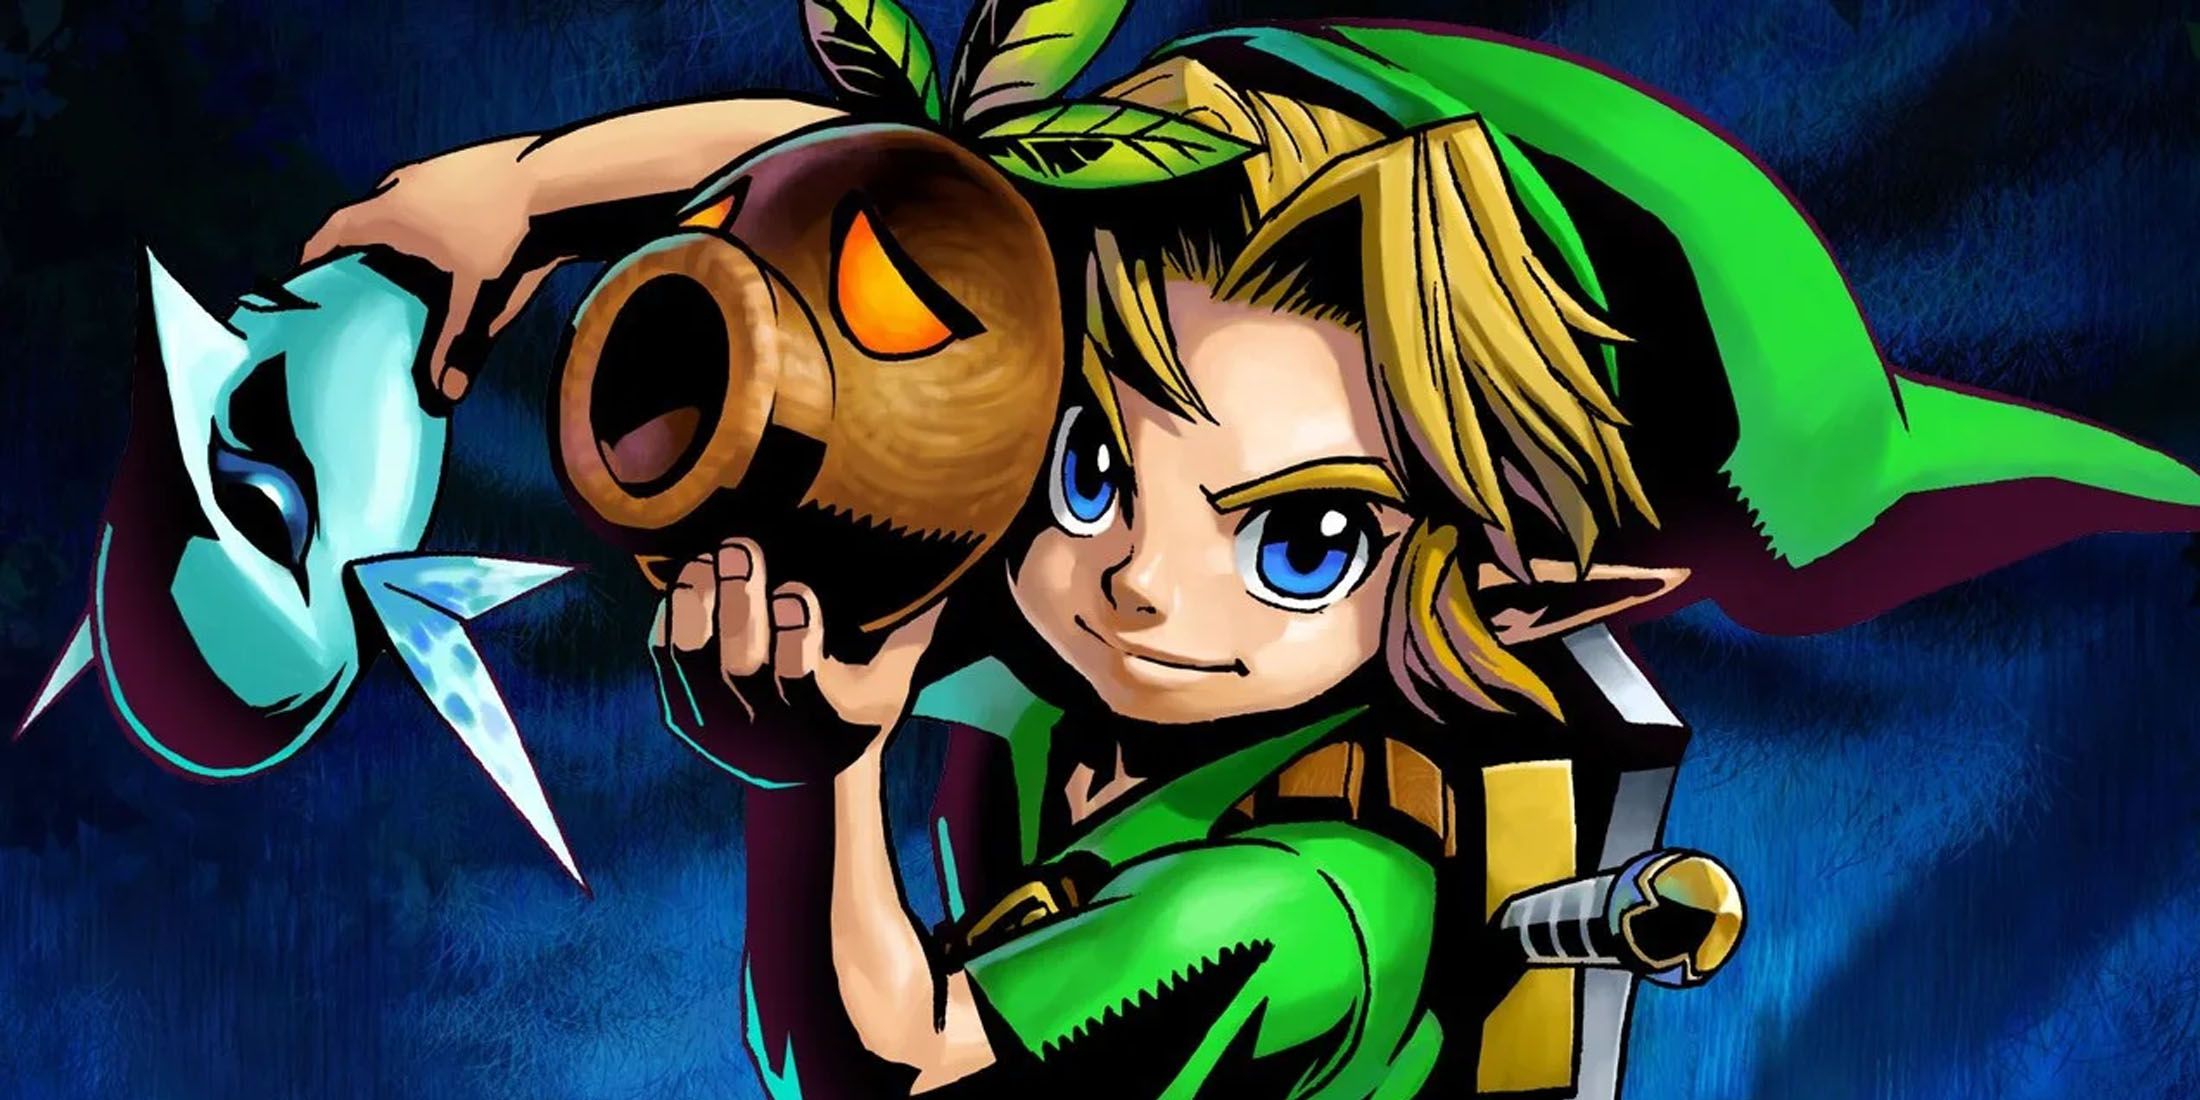 A promotional image of Link holding masks from The Legend of Zelda: Majora's Mask.